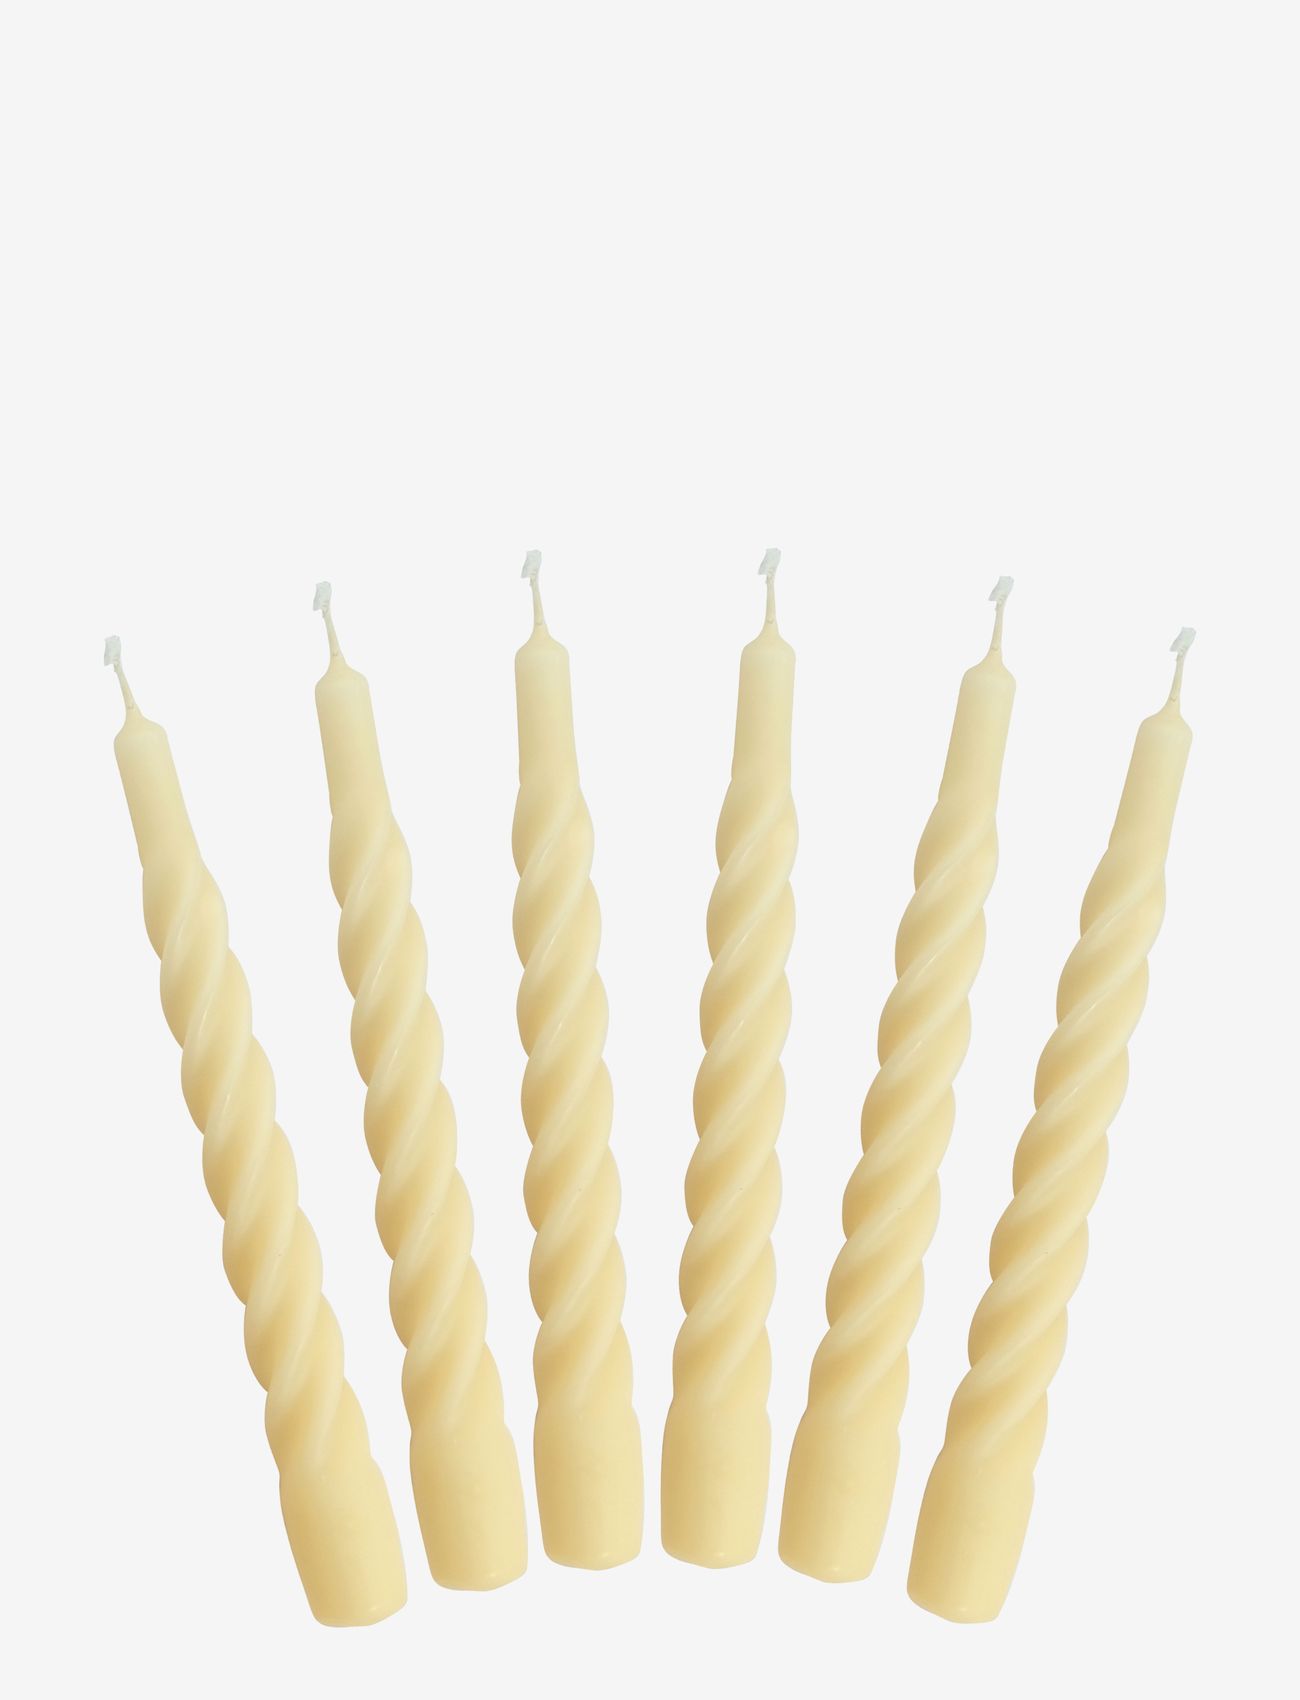 Kunstindustrien - Candles with a Twist -  Matt - laveste priser - ivory - 0